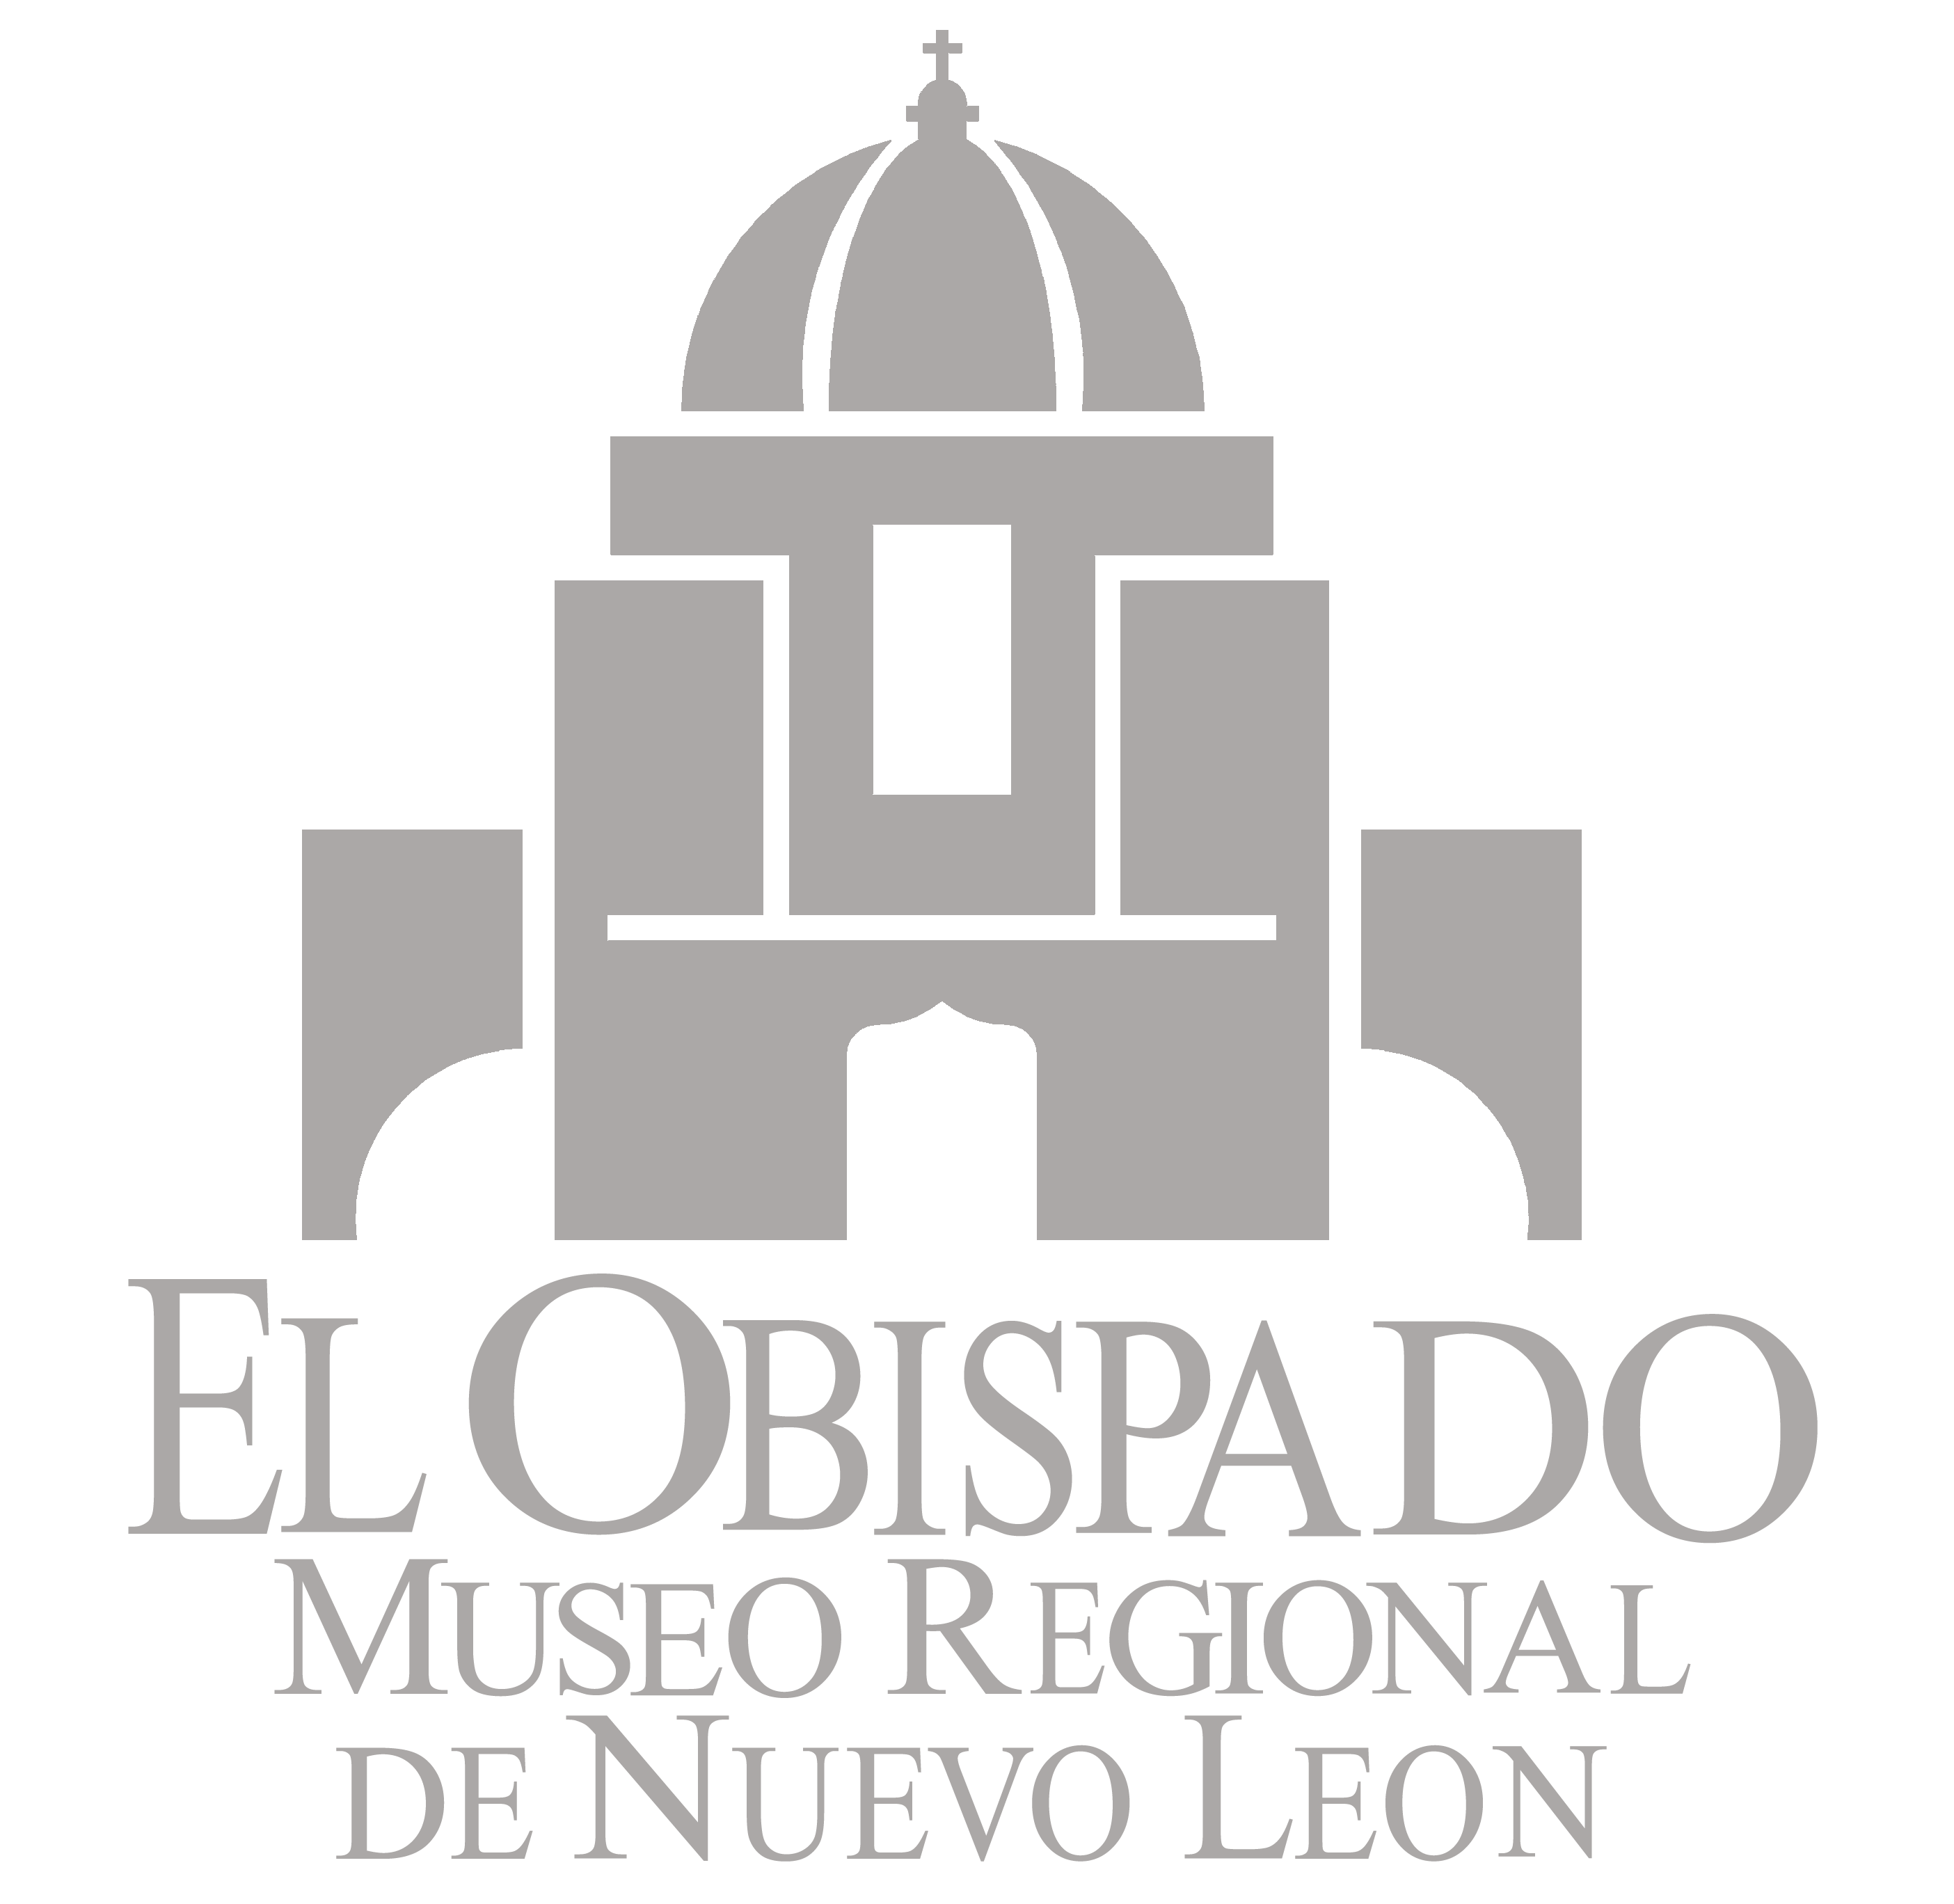 Museo Regional de Nuevo León 